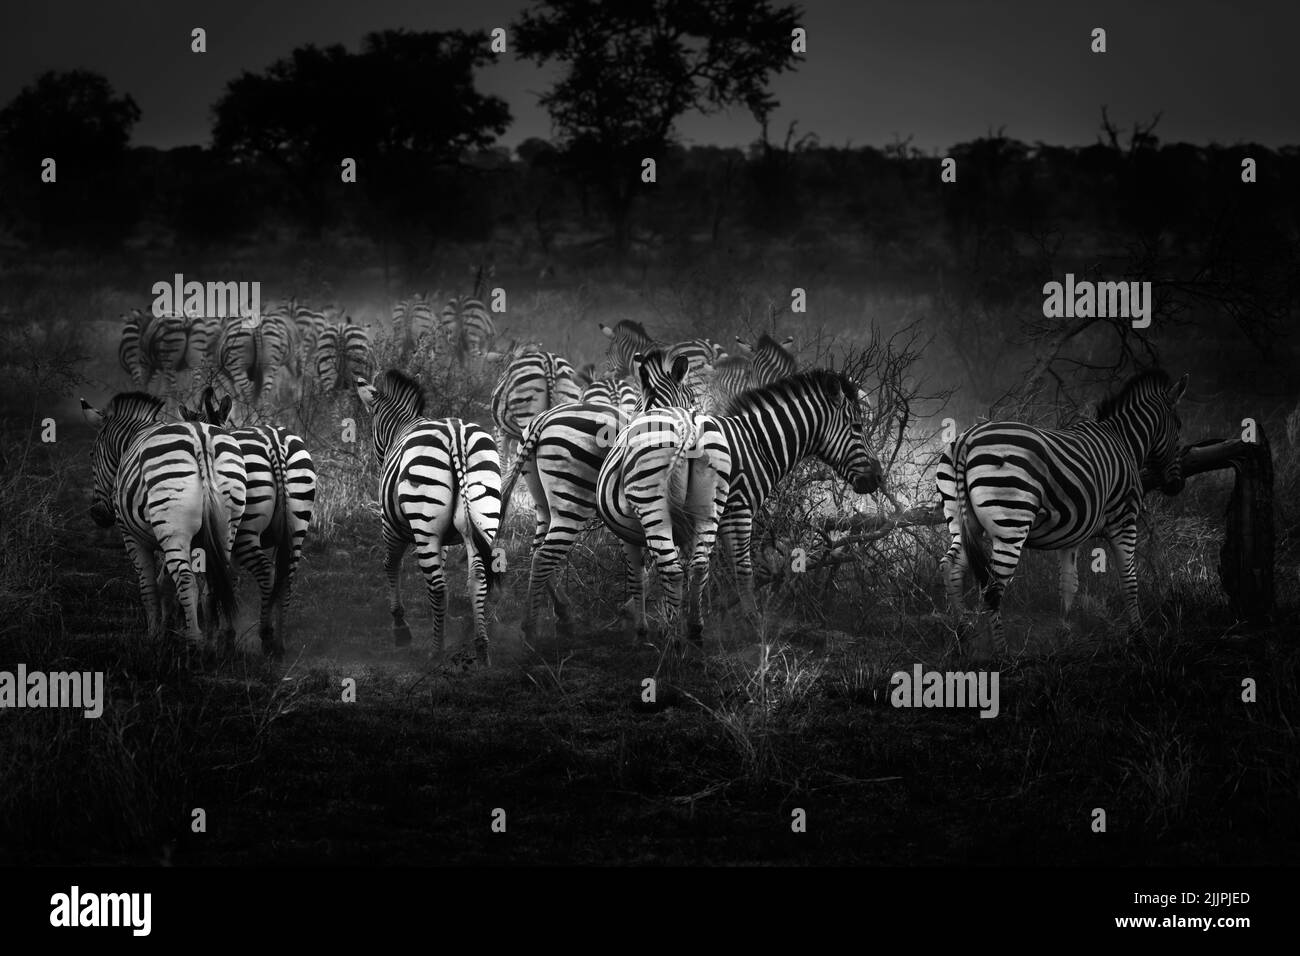 Rebaño de cebras caminando a través de un área recientemente quemada de la imagen negra y blanca africana de veld Foto de stock